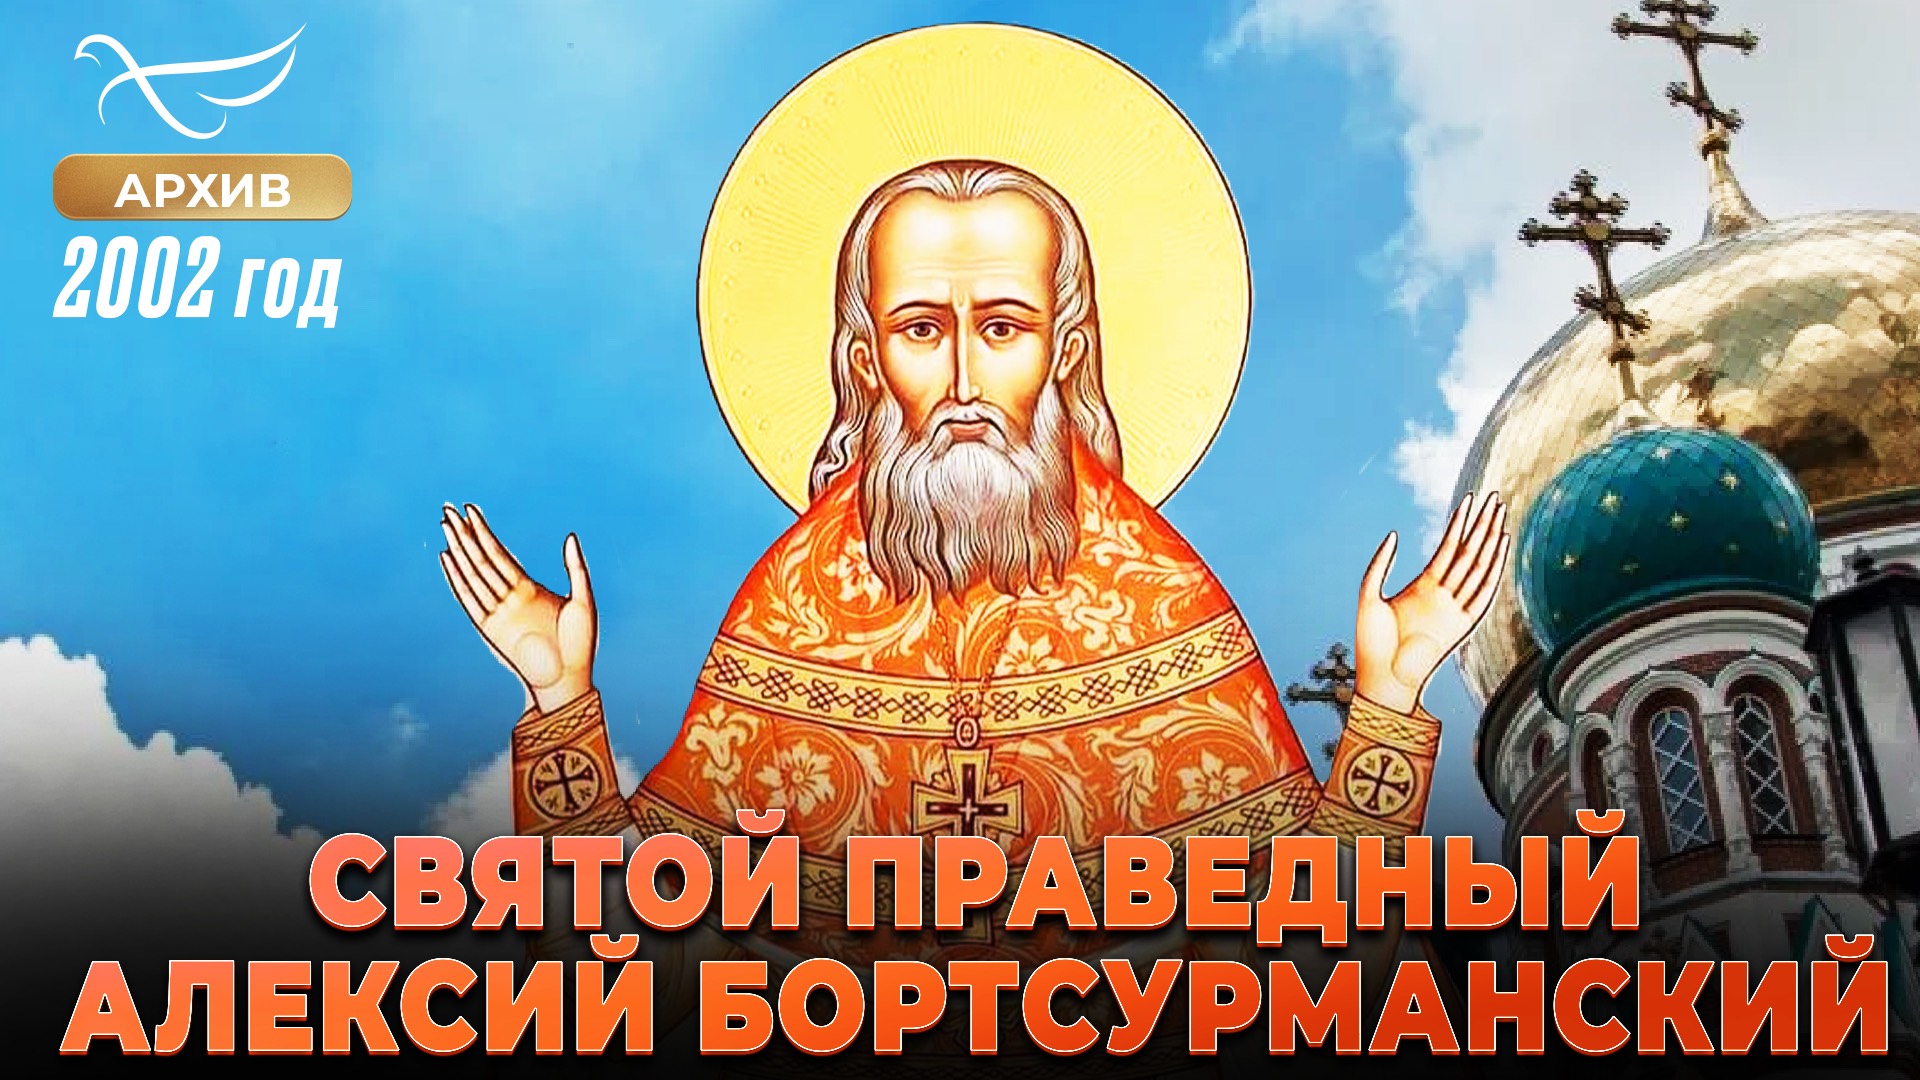 Святой праведный Алексий Бортсурманский (2002)